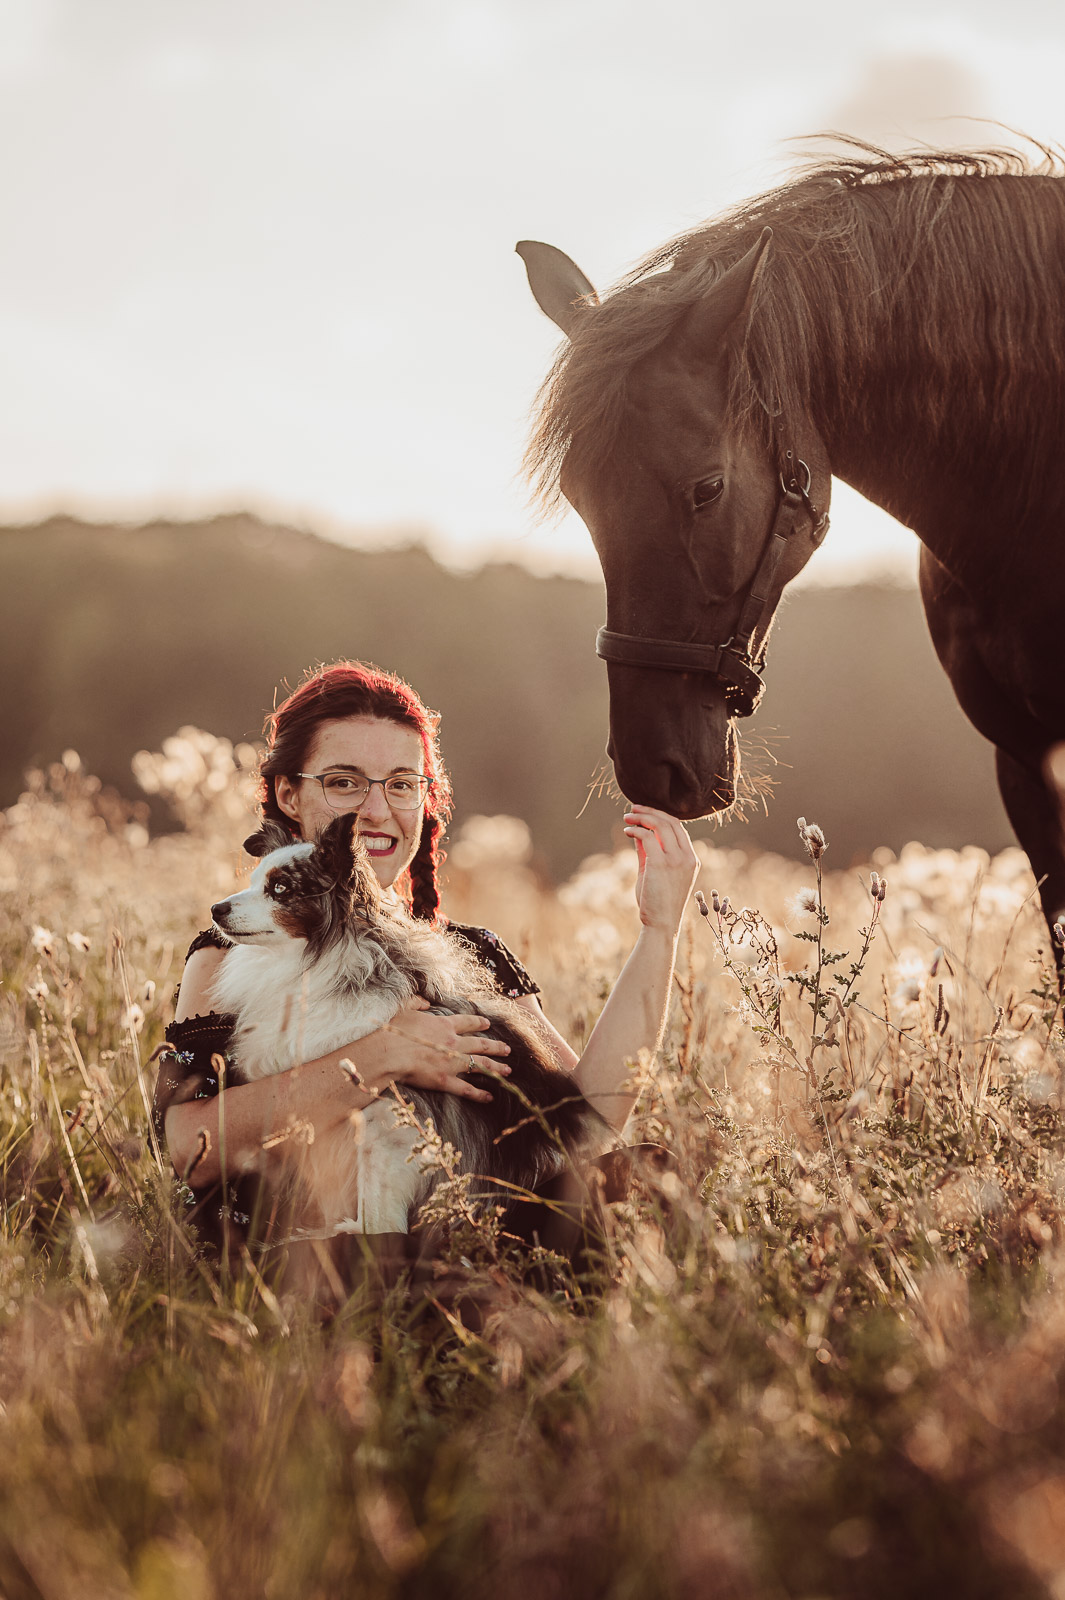 Mensch-Hund-Fotografie mit deinem Hund und Pferd | Hundefotograf & Tierfotograf Rostock